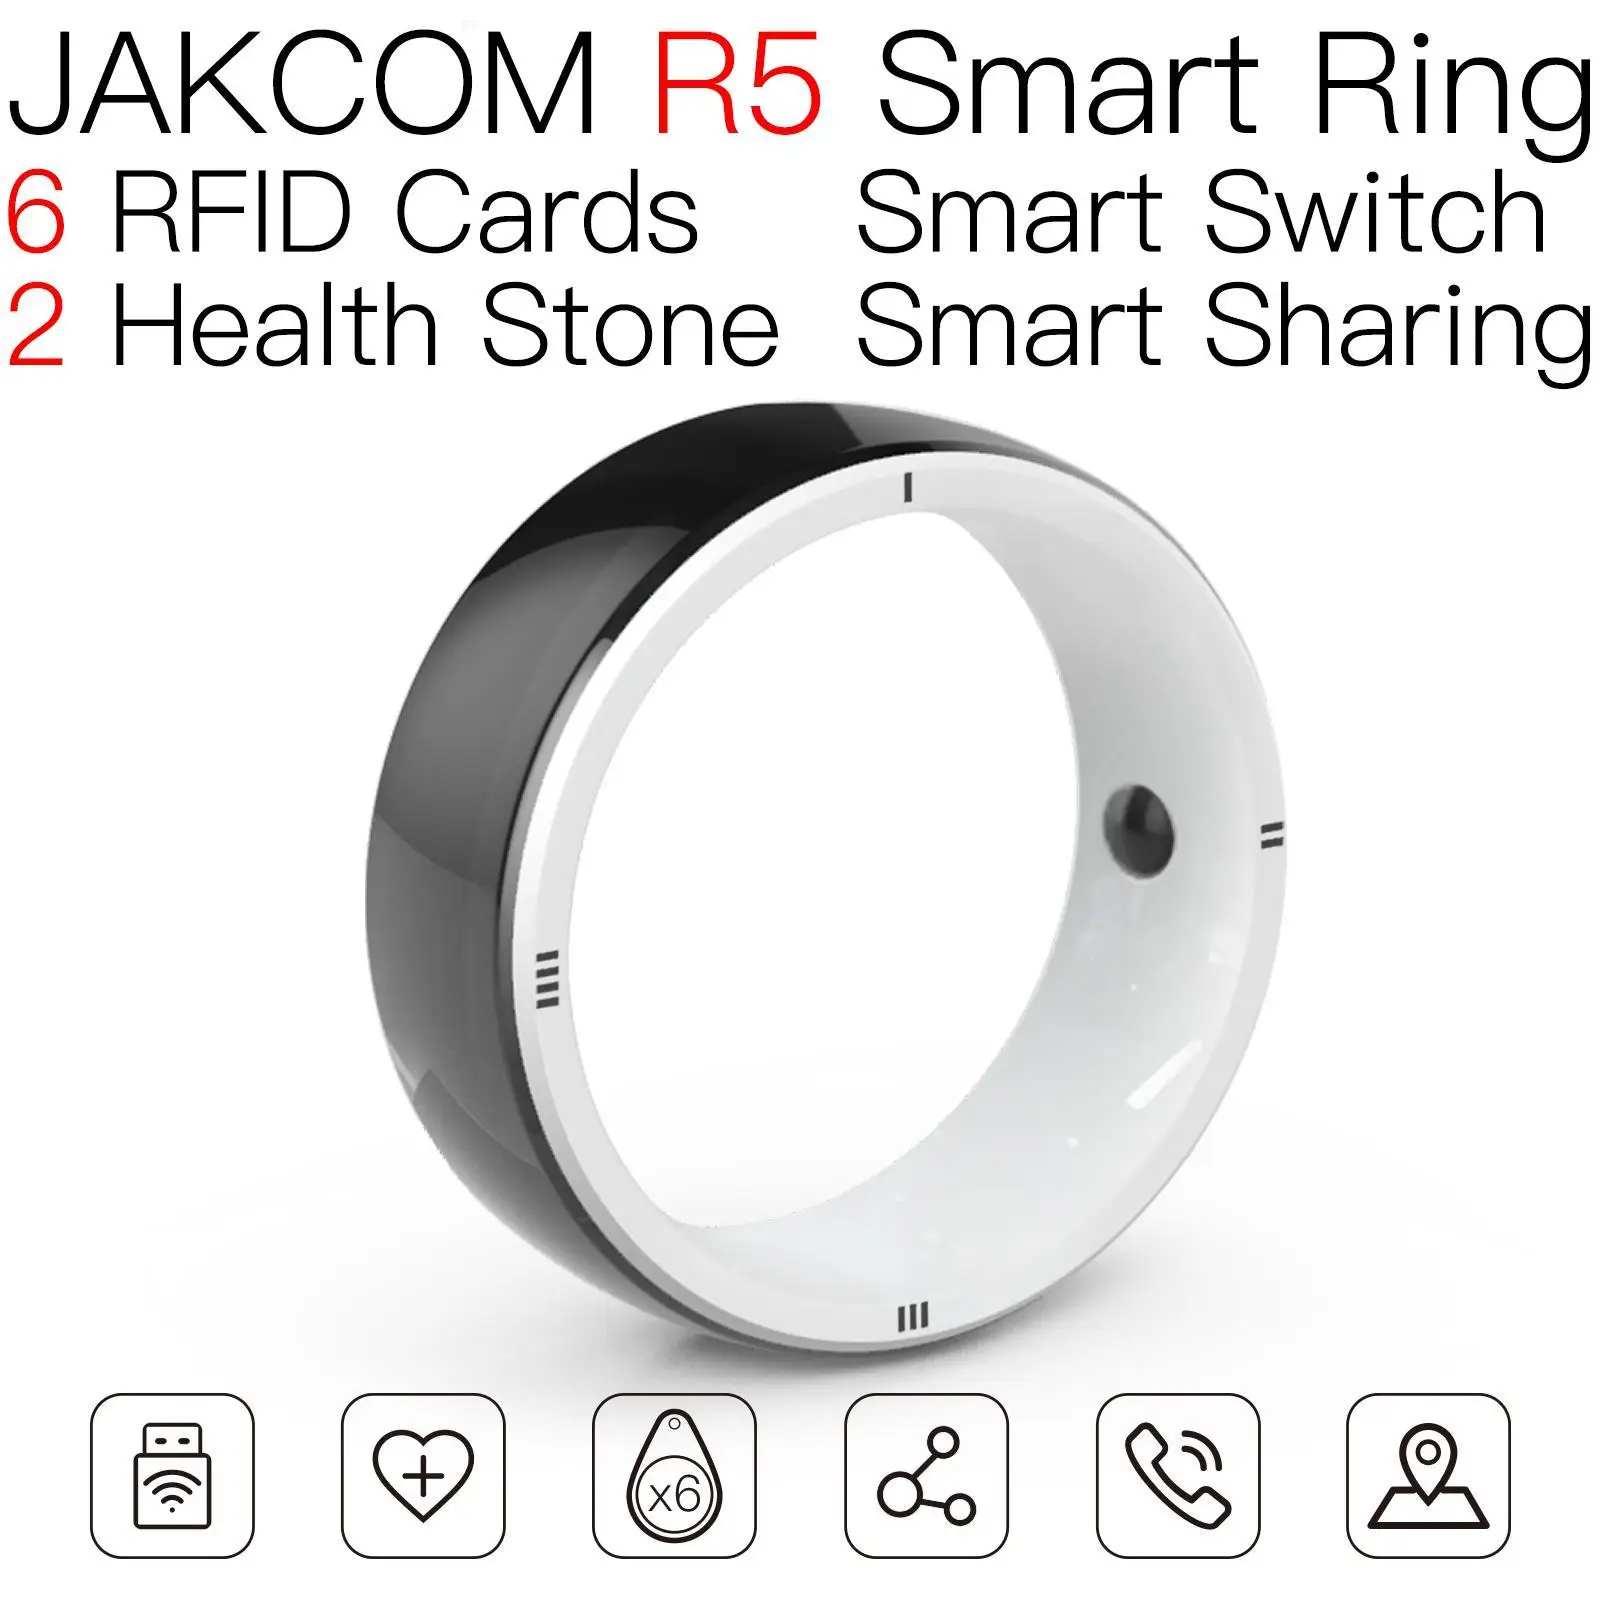 

Умное кольцо JAKCOM R5, лучше, чем android mct uid 0 t5577 nfc tag diamond t5557 rfid карта, чистые индексные карты yu gi oh logo Smart